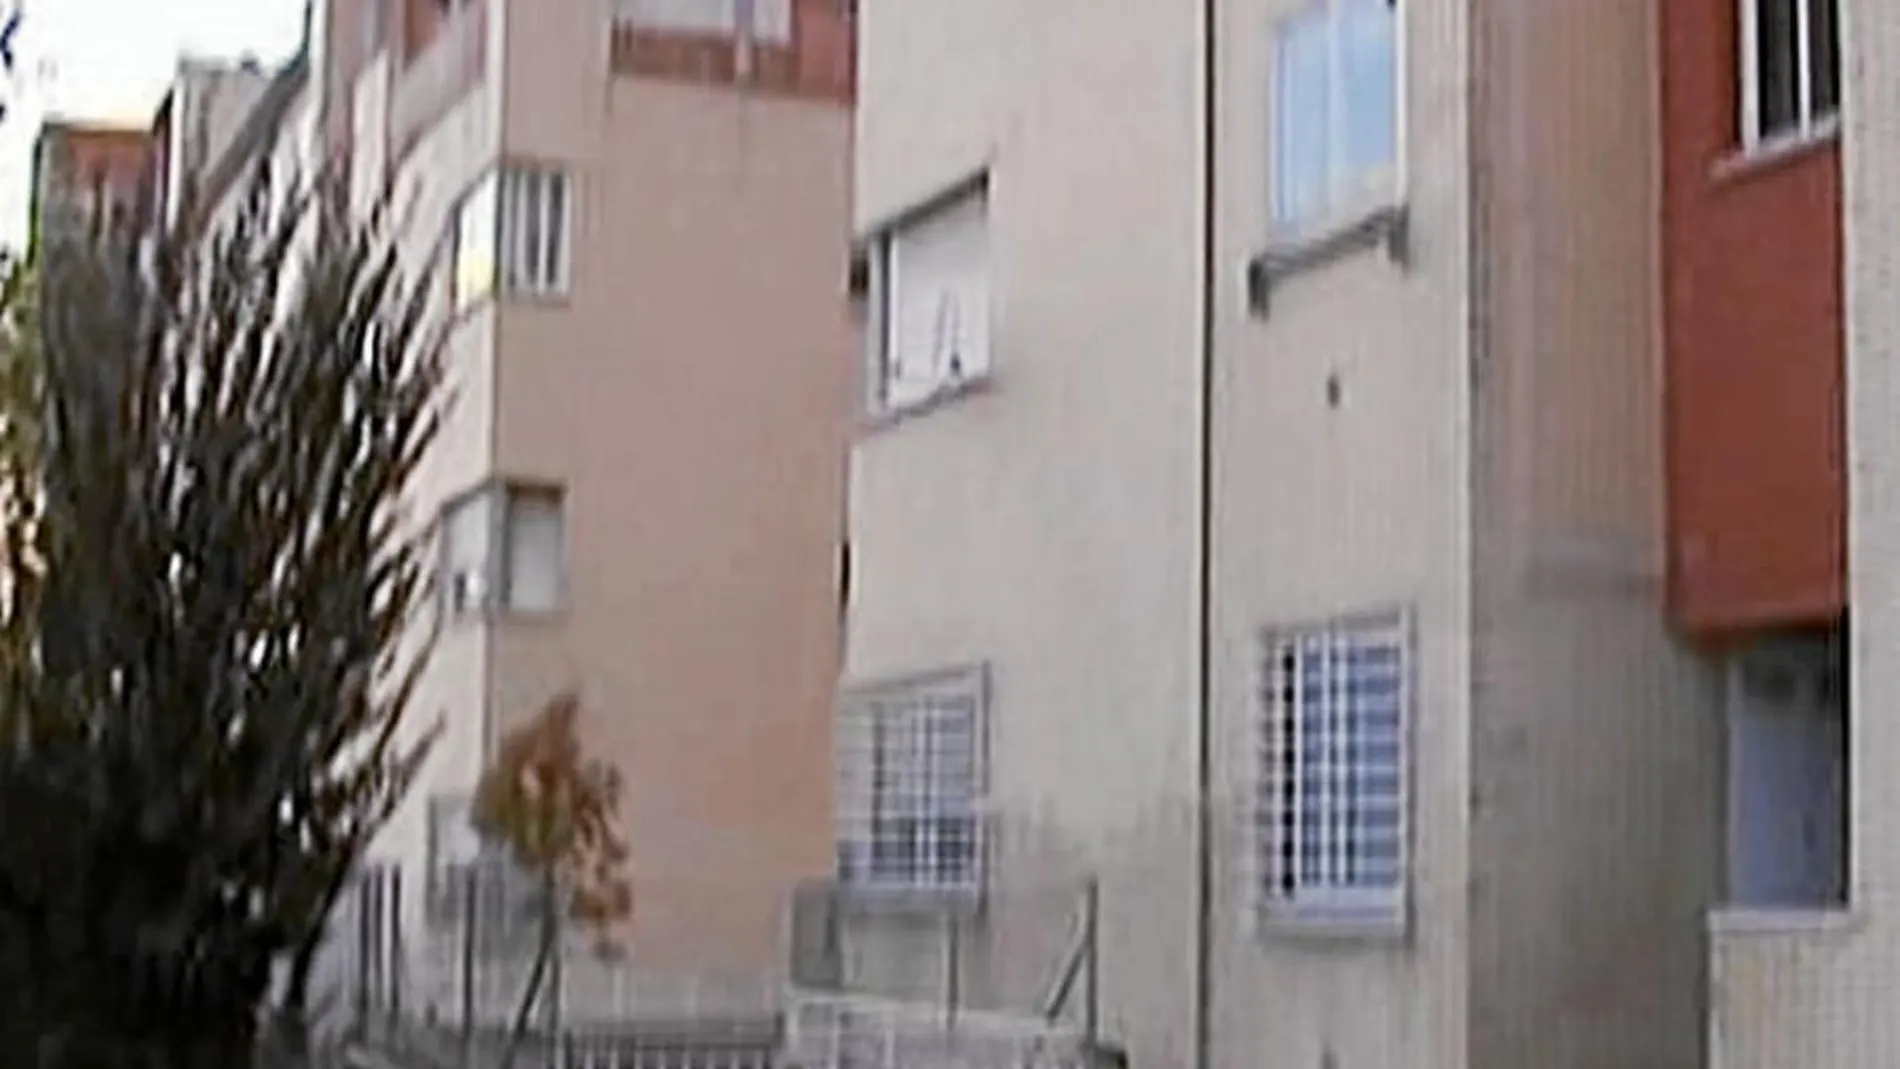 El suceso se produjo en la calle Amapolas de Villalba, el agresor se tiró desde un tercer piso